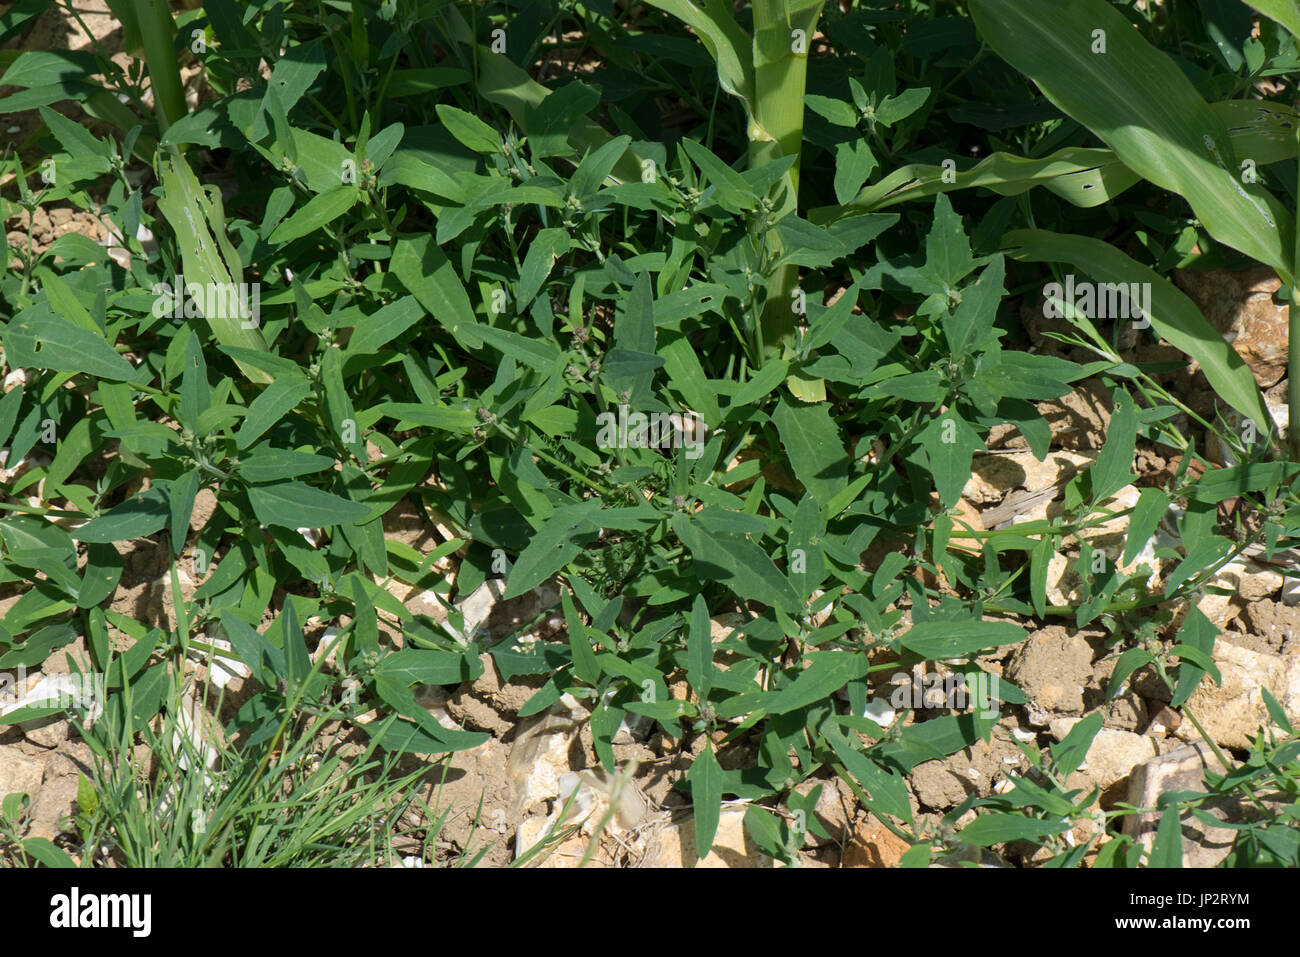 Gemeinsame oder sich ausbreitenden Basallappen, Atriplex Patula verbreiten auf der Basis der jungen wachsenden Mais oder Mais Ernte, Berkshire, Juli Stockfoto